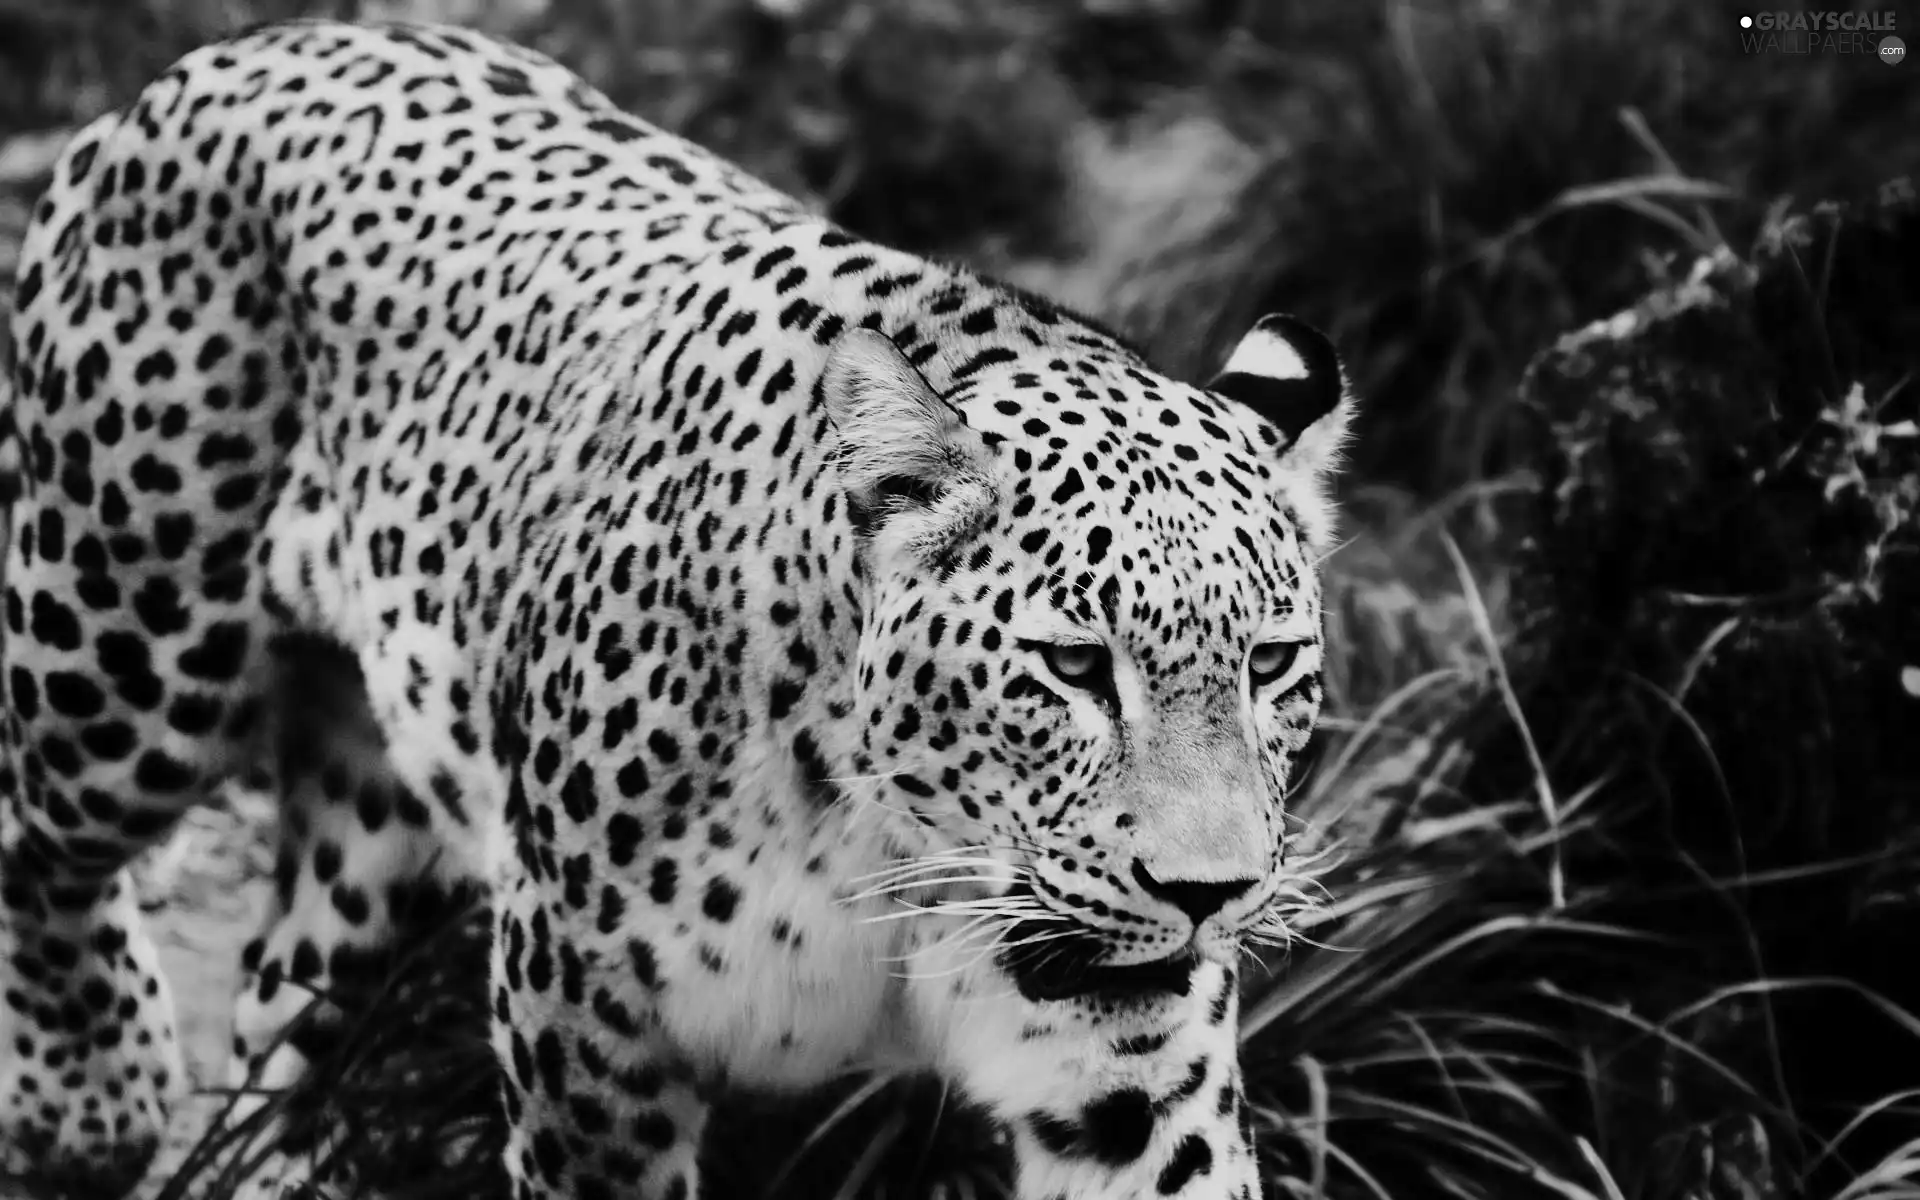 dangerous, Leopards